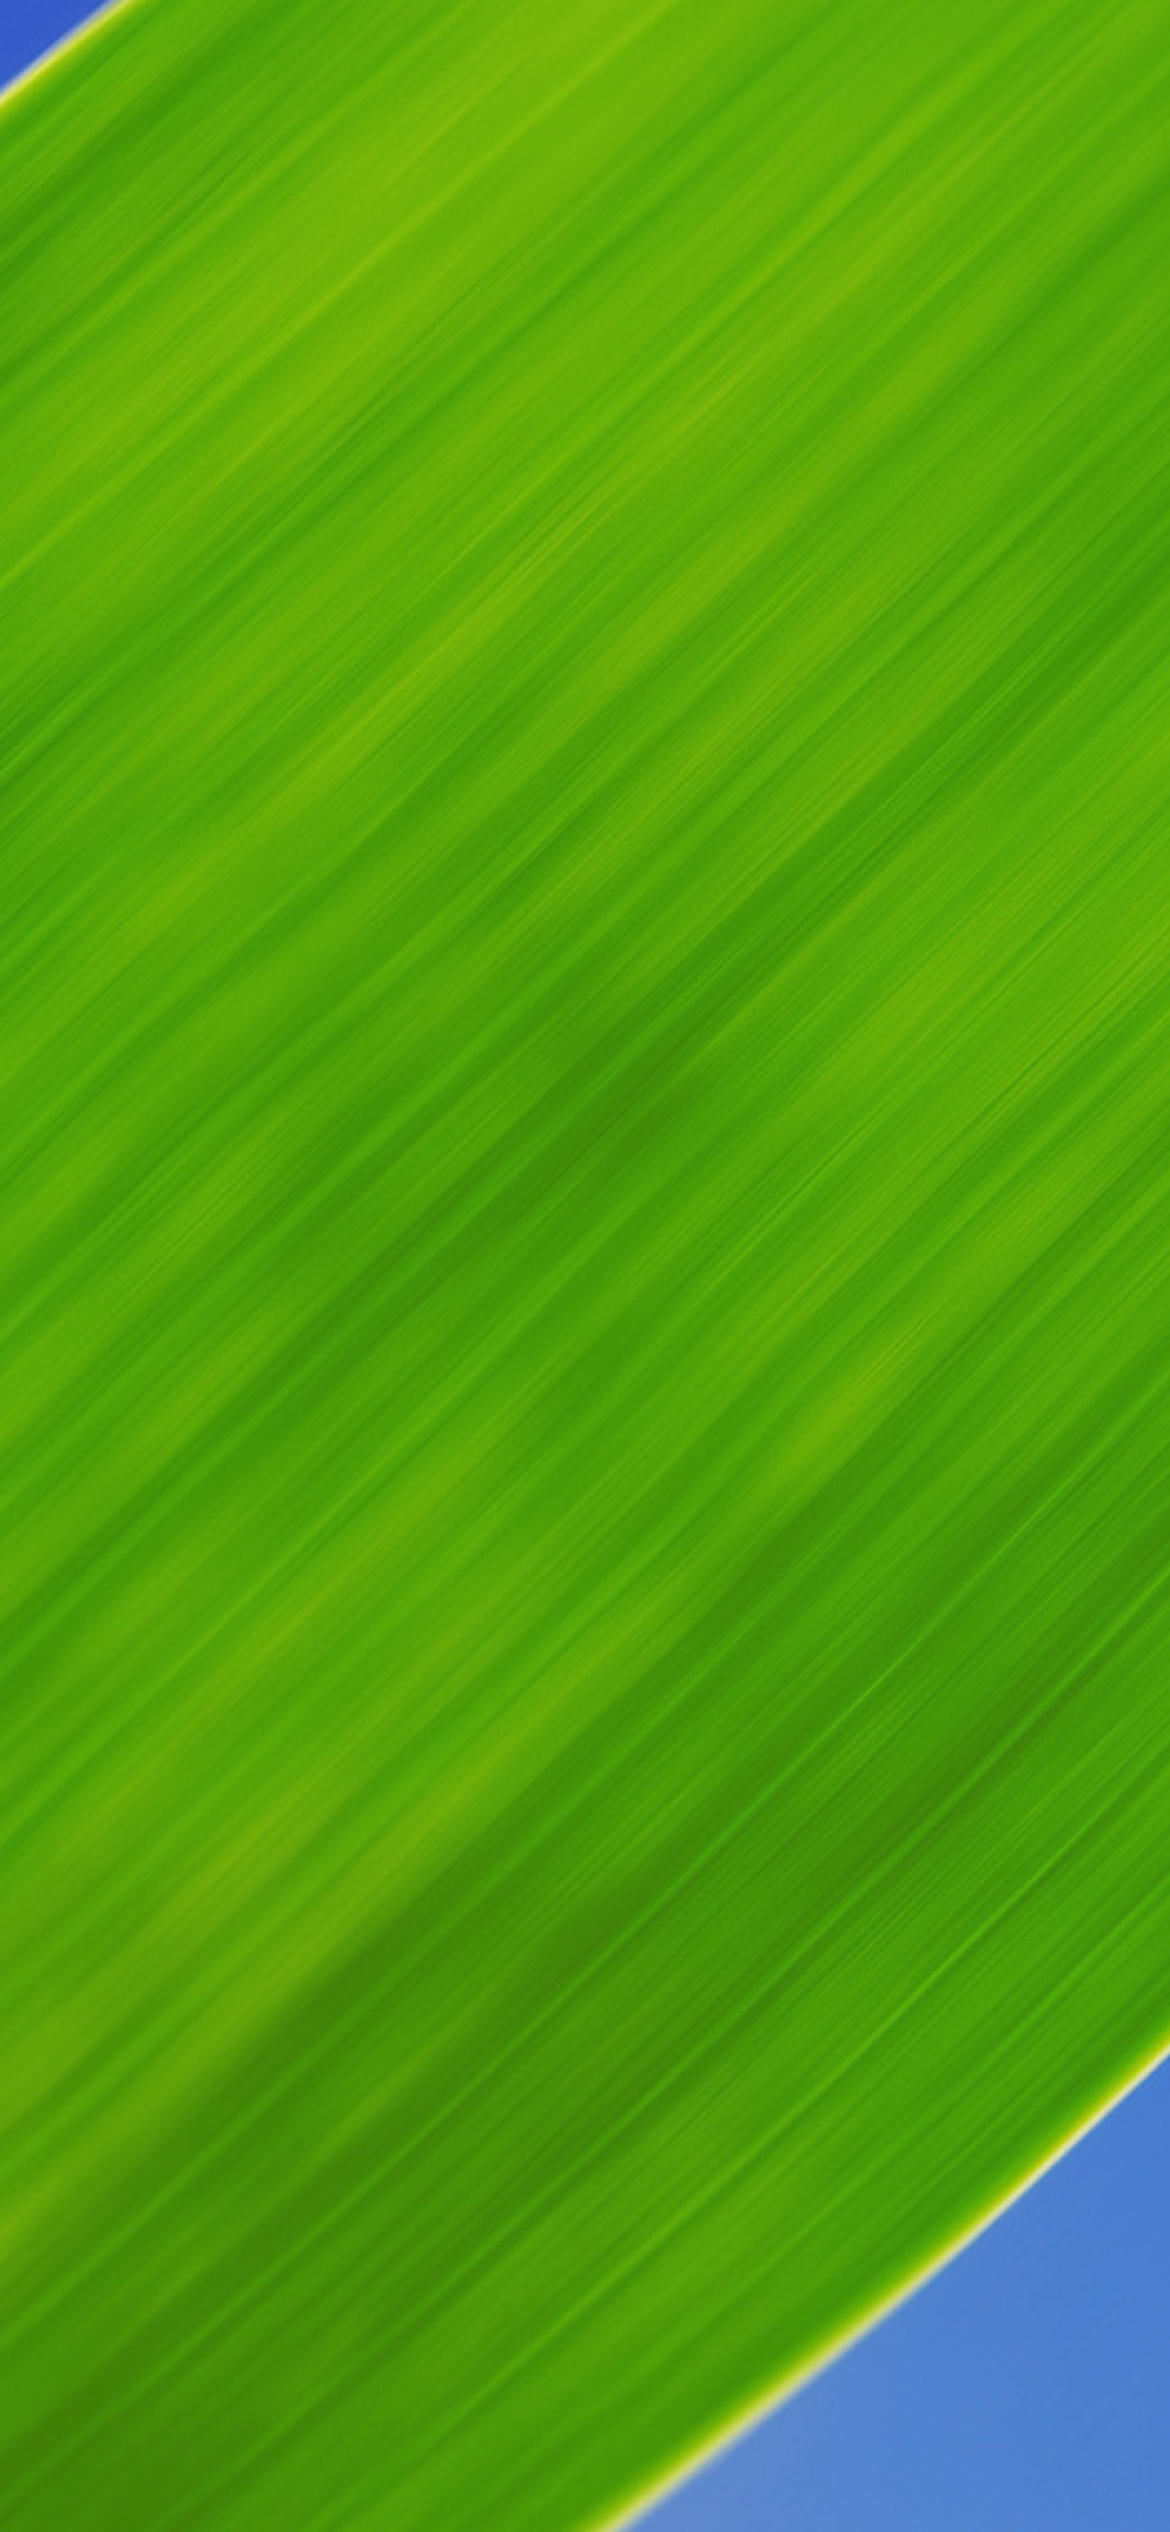 Sfondi Green Grass Close Up 1170x2532